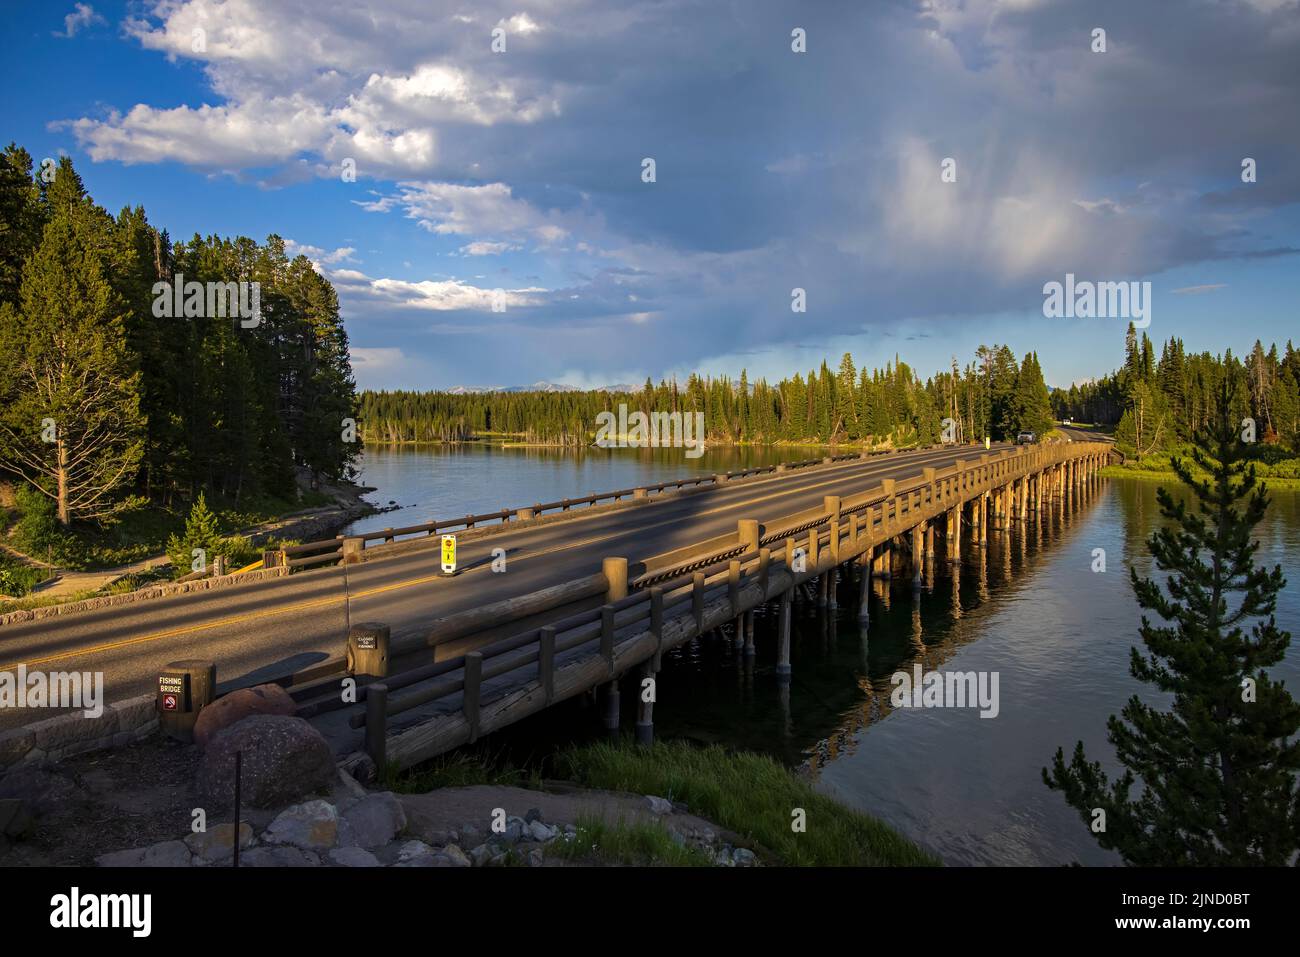 Il s'agit d'une vue en fin d'après-midi sur le pont de pêche historique, qui enjambe la rivière Yellowstone dans le parc national de Yellowstone, comté de Teton, Wyoming. Banque D'Images